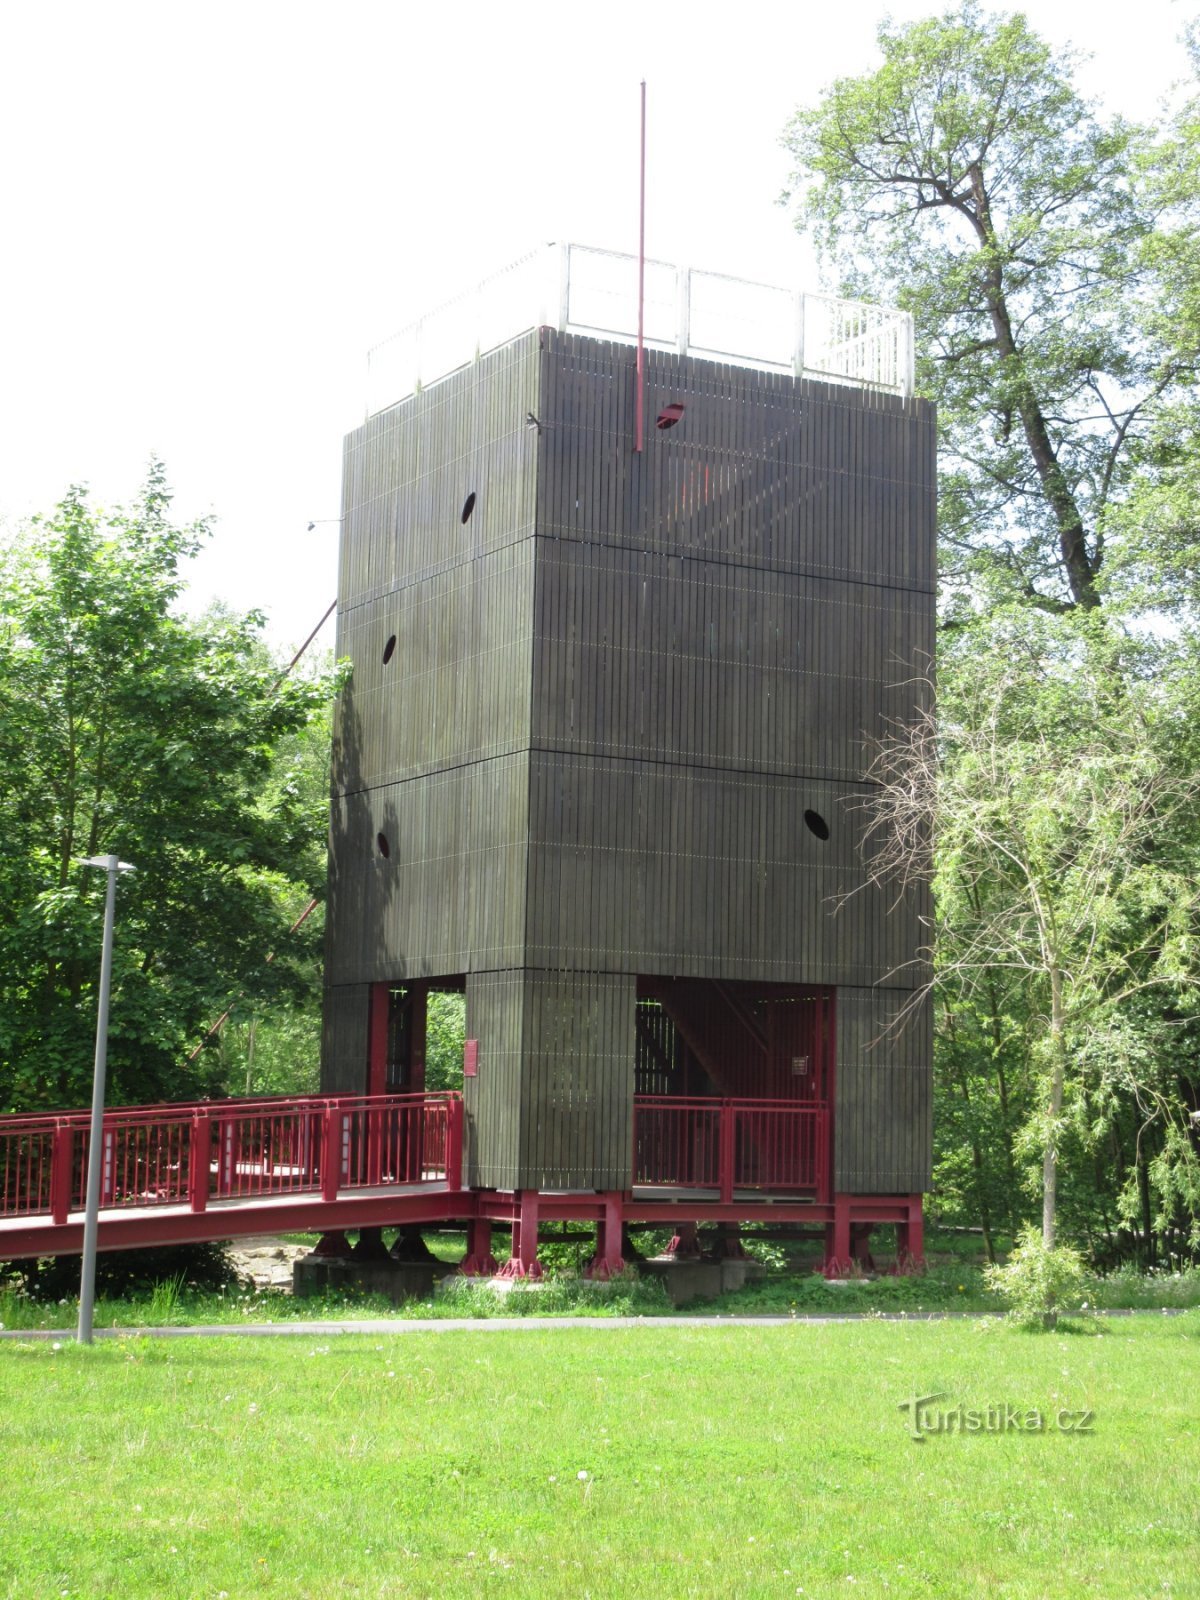 Turnul de observație pe podul din Cheb - Turnul de observație Vávrova